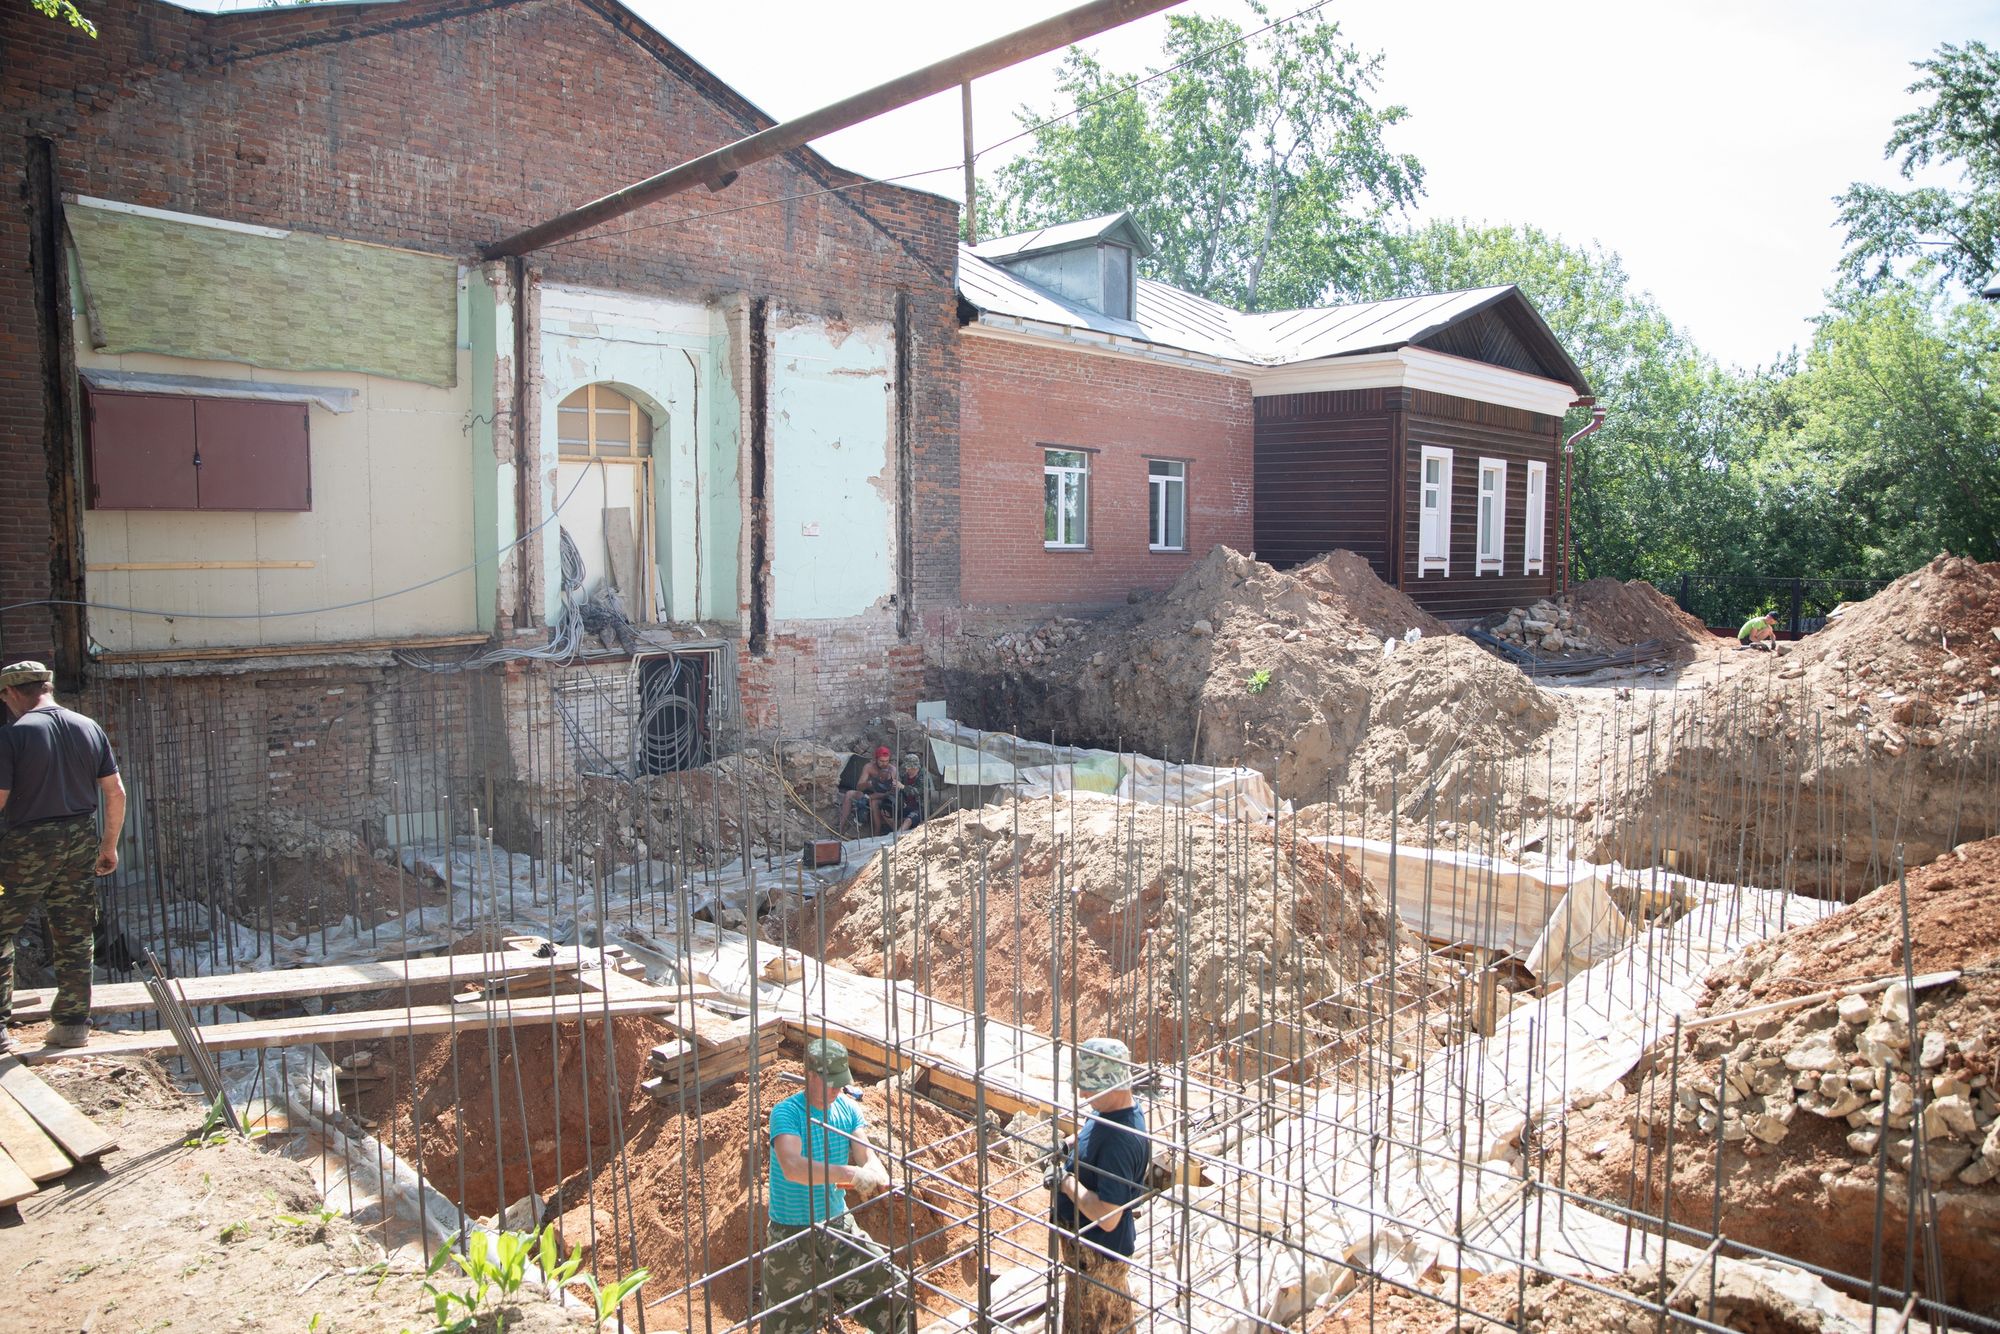 

Аварийное здание бывшего диспансера в центре Ижевска отдали под храм

